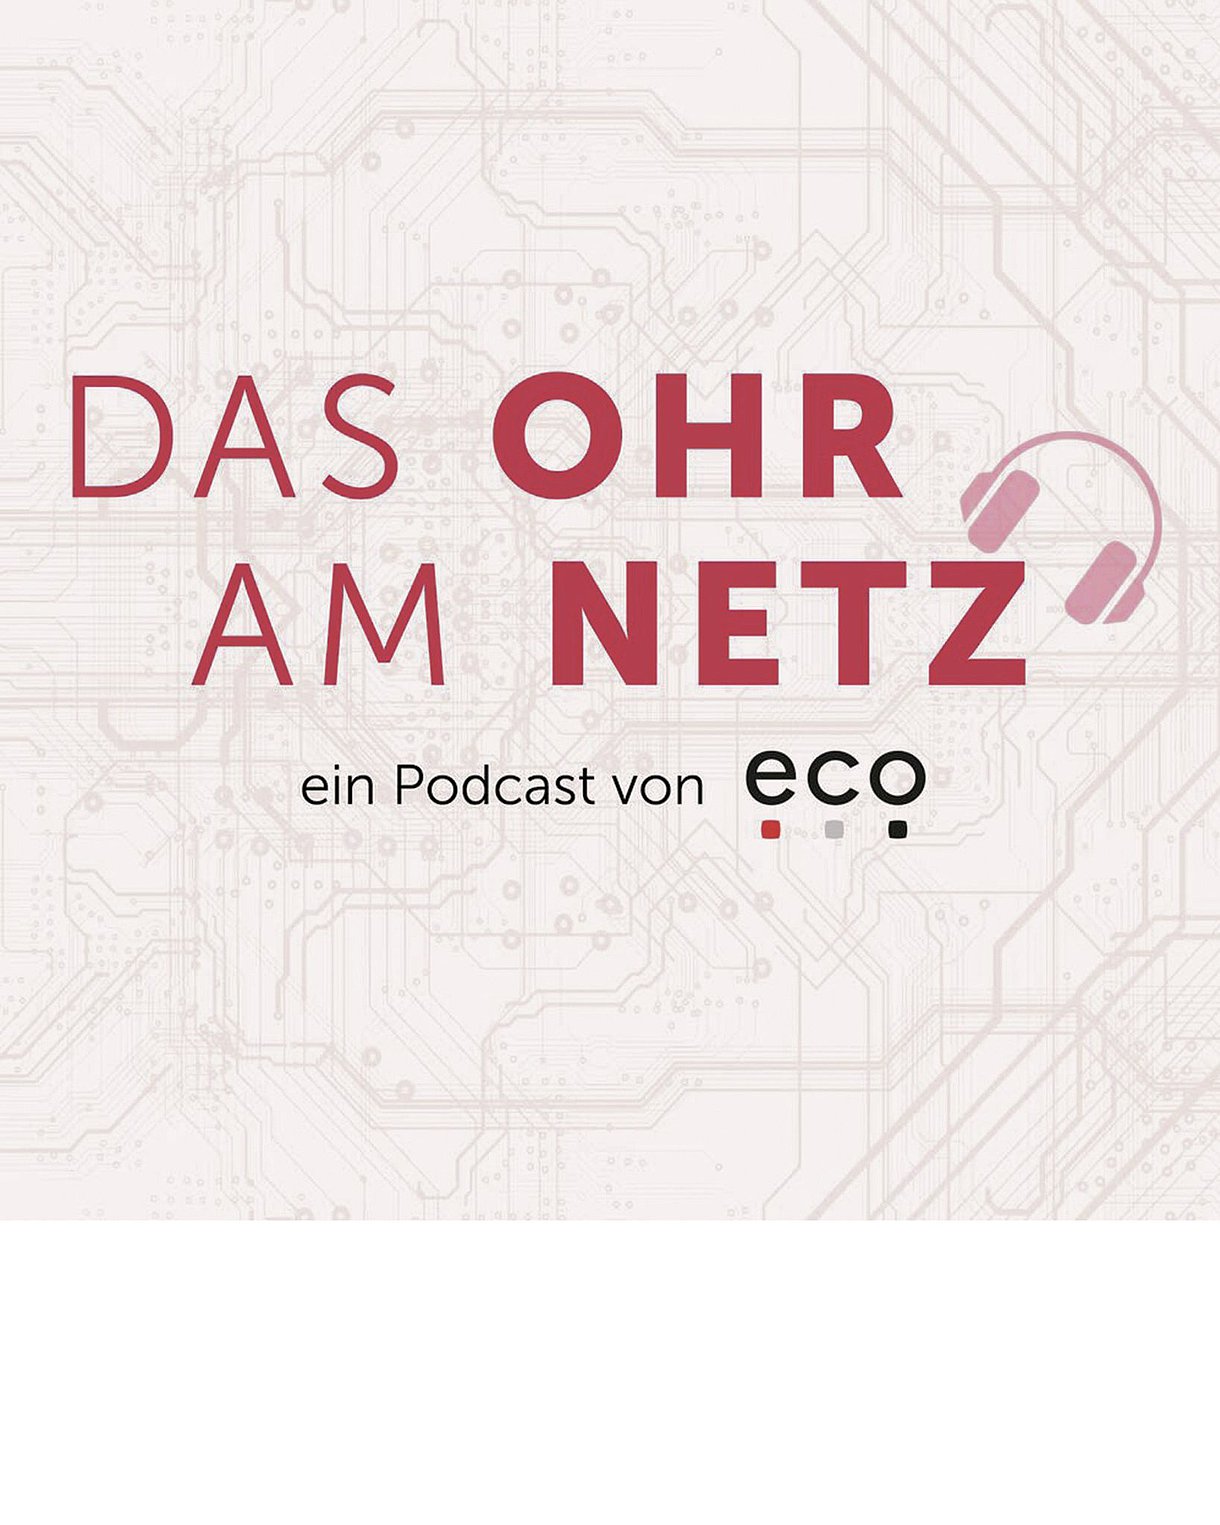 Foto: Cover vom Podcast "Das Ohr am Netz" von eco